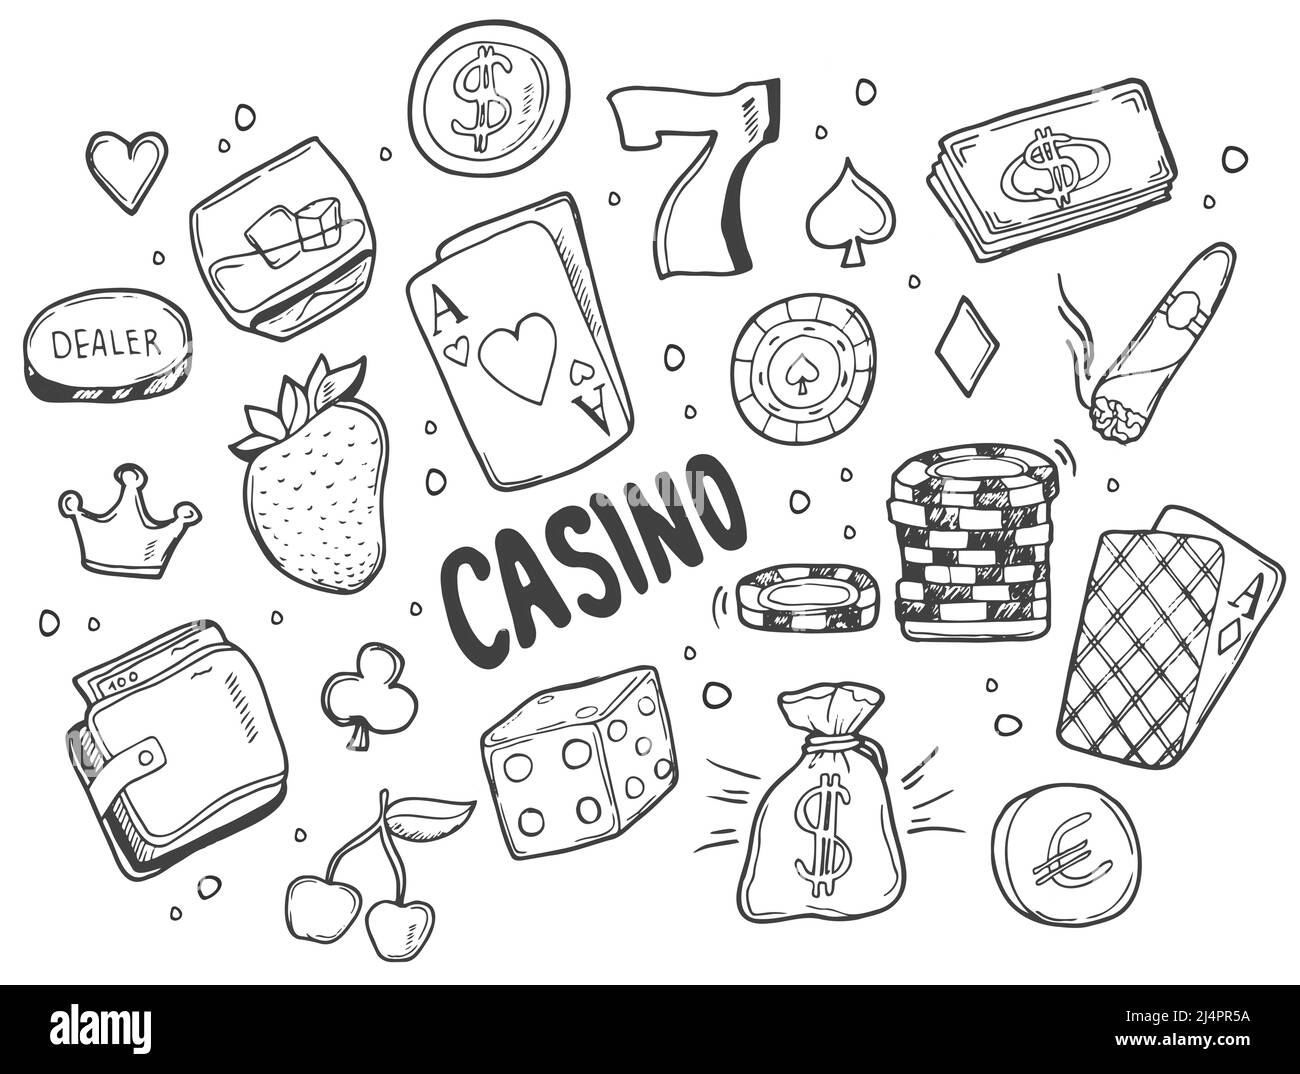 Doodle skizzenhafte Vektor handgezeichnete Doodle Cartoon-Set von Casino-Objekten und Symbolen Stock Vektor